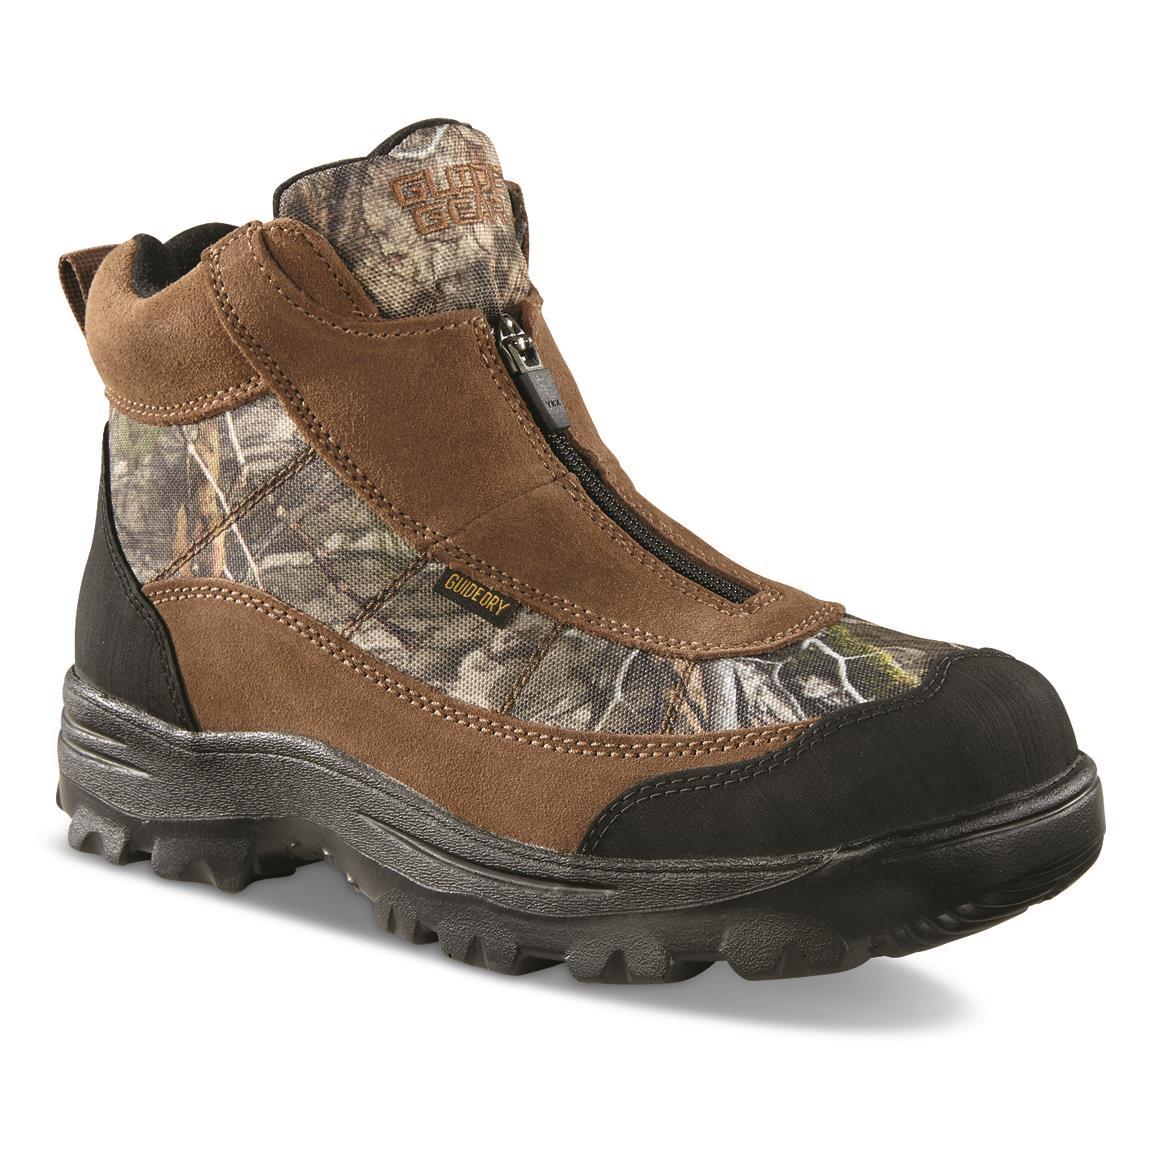 Salomon Men's Quest Rove Mid GTX Waterproof Hiking Boots - 730103 ...